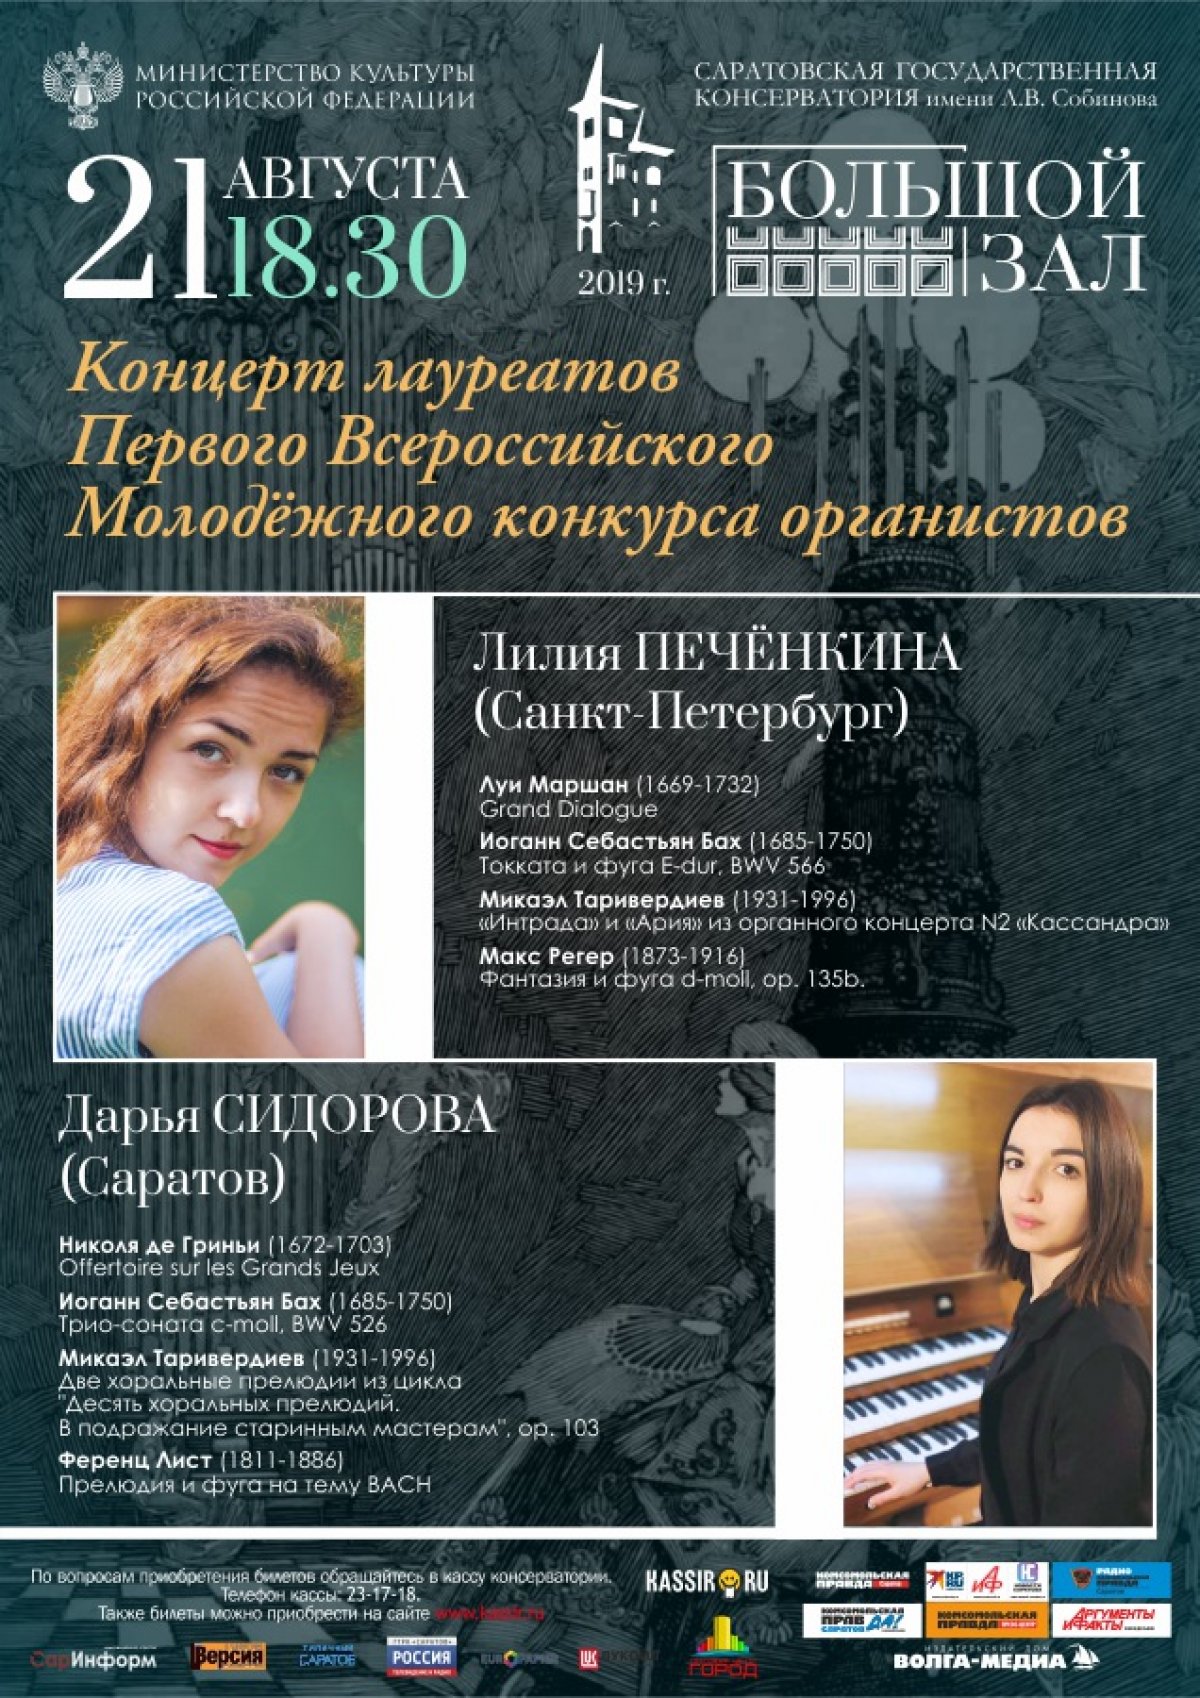 В феврале 2019 года наш город впервые встречал юных органистов со всей России. В Саратовской консерватории проходил Первый Всероссийский Молодежный конкурс органистов.